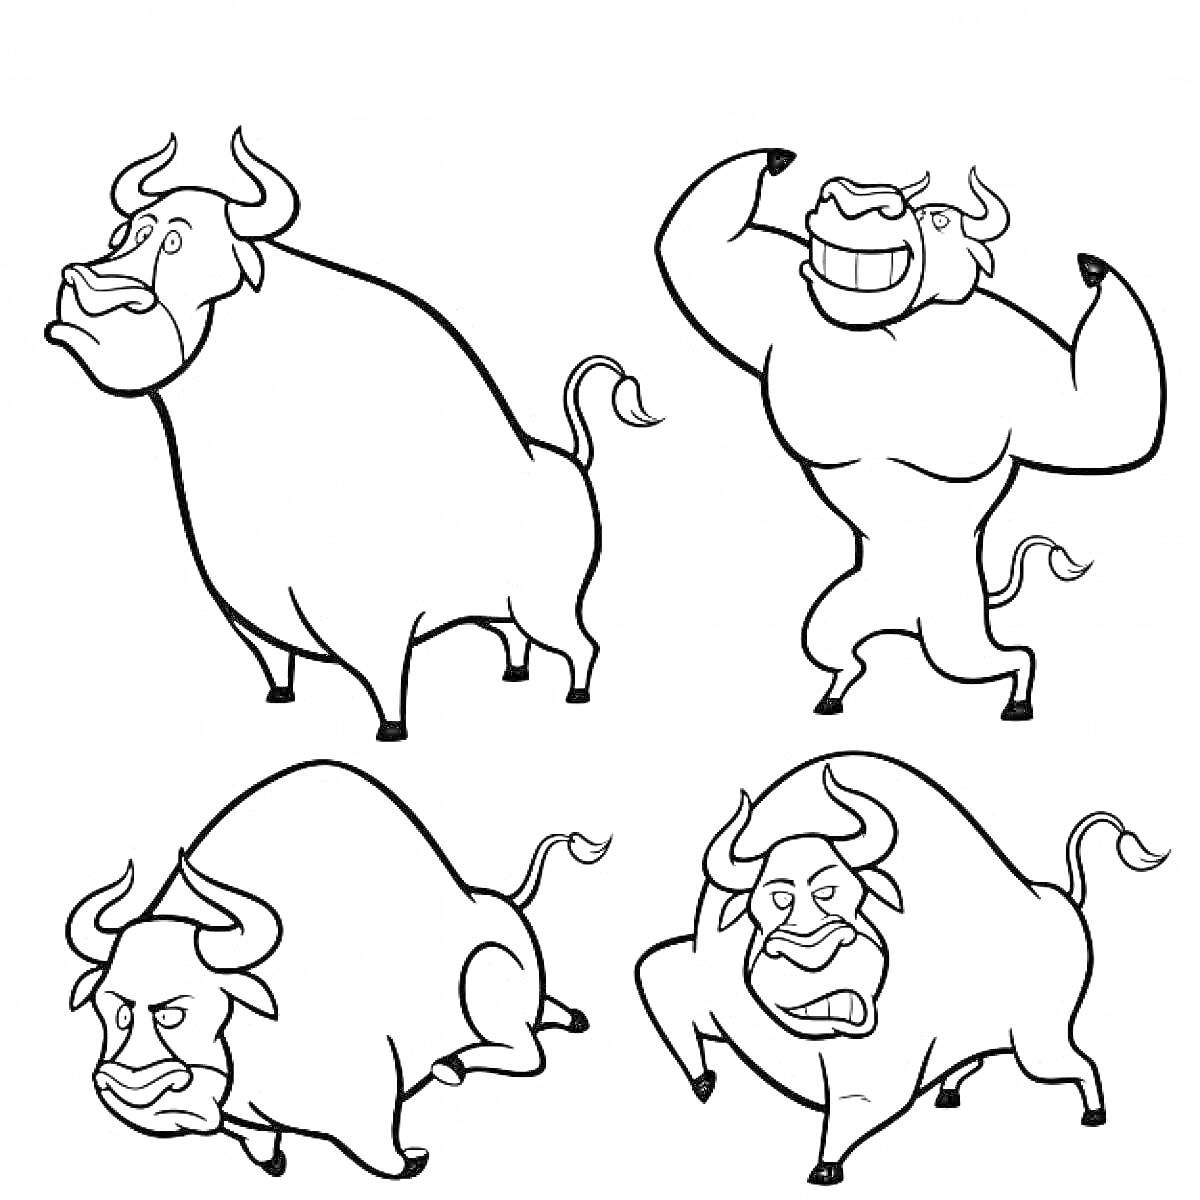 Четыре быка с разными эмоциями и позами: стоящий спокойный бык, сильный бык с поднятыми руками, недовольный бык в позе нападения, смеющийся бык